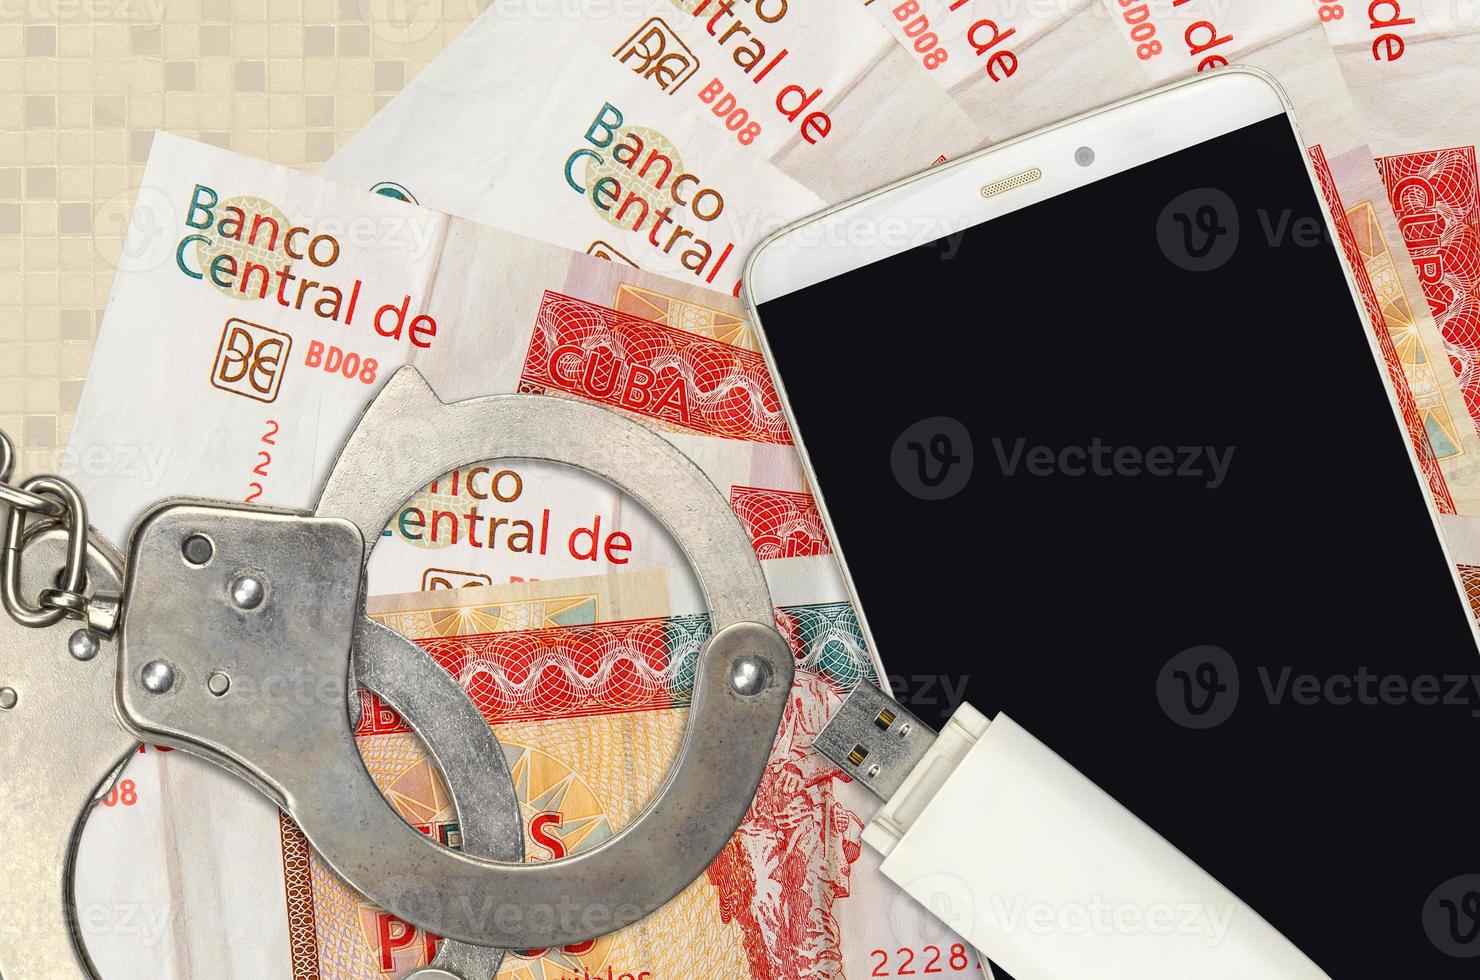 3 cubano pesos convertibili fatture e smartphone con polizia manette. concetto di gli hacker phishing attacchi, illegale truffa o il malware morbido distribuzione foto